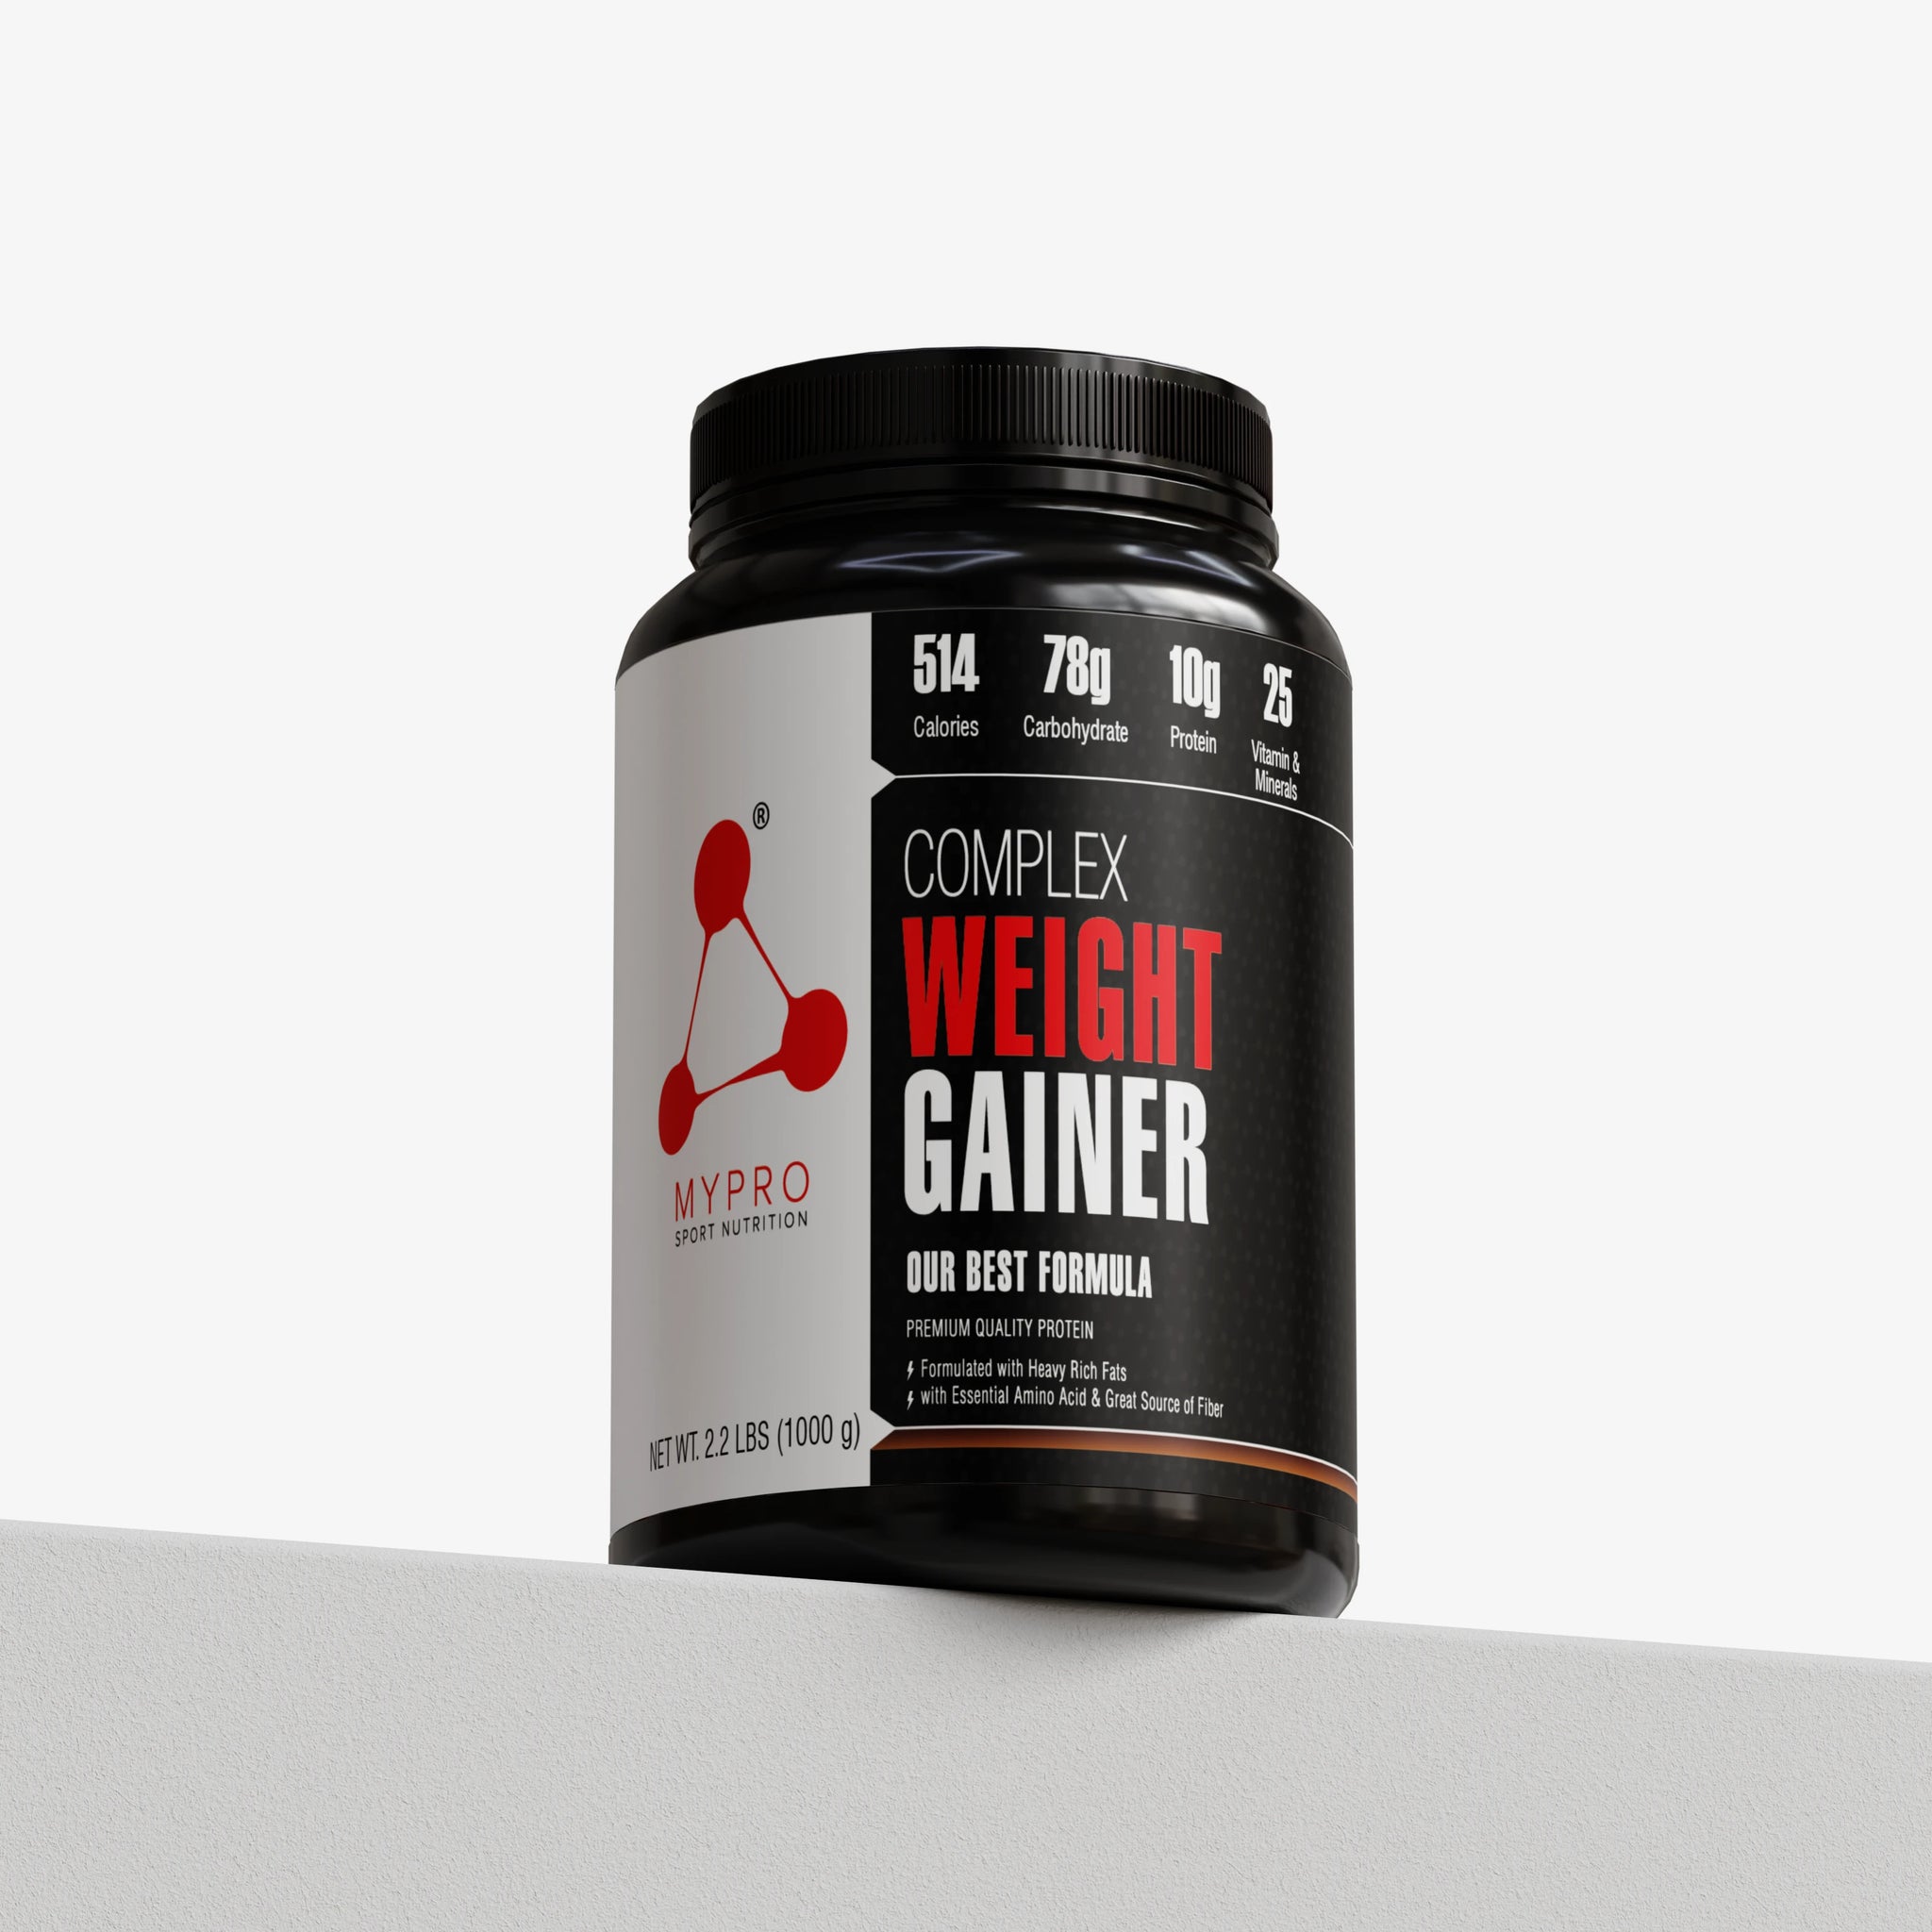 Weight Gainer High Protein Supplement Powder